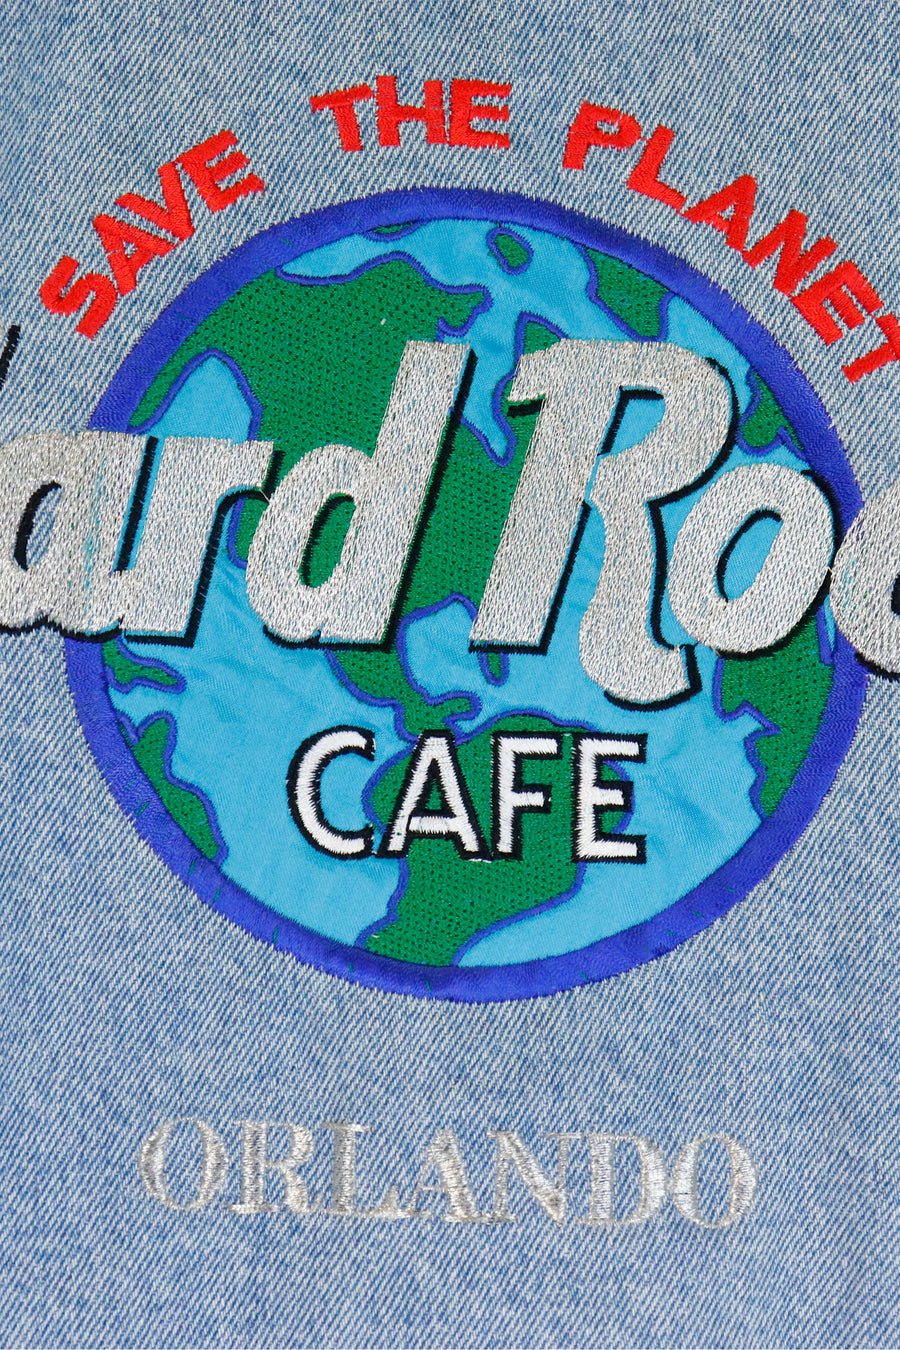 Vintage Hard Rock Cafe Denim Embroidered Jacket Sz L